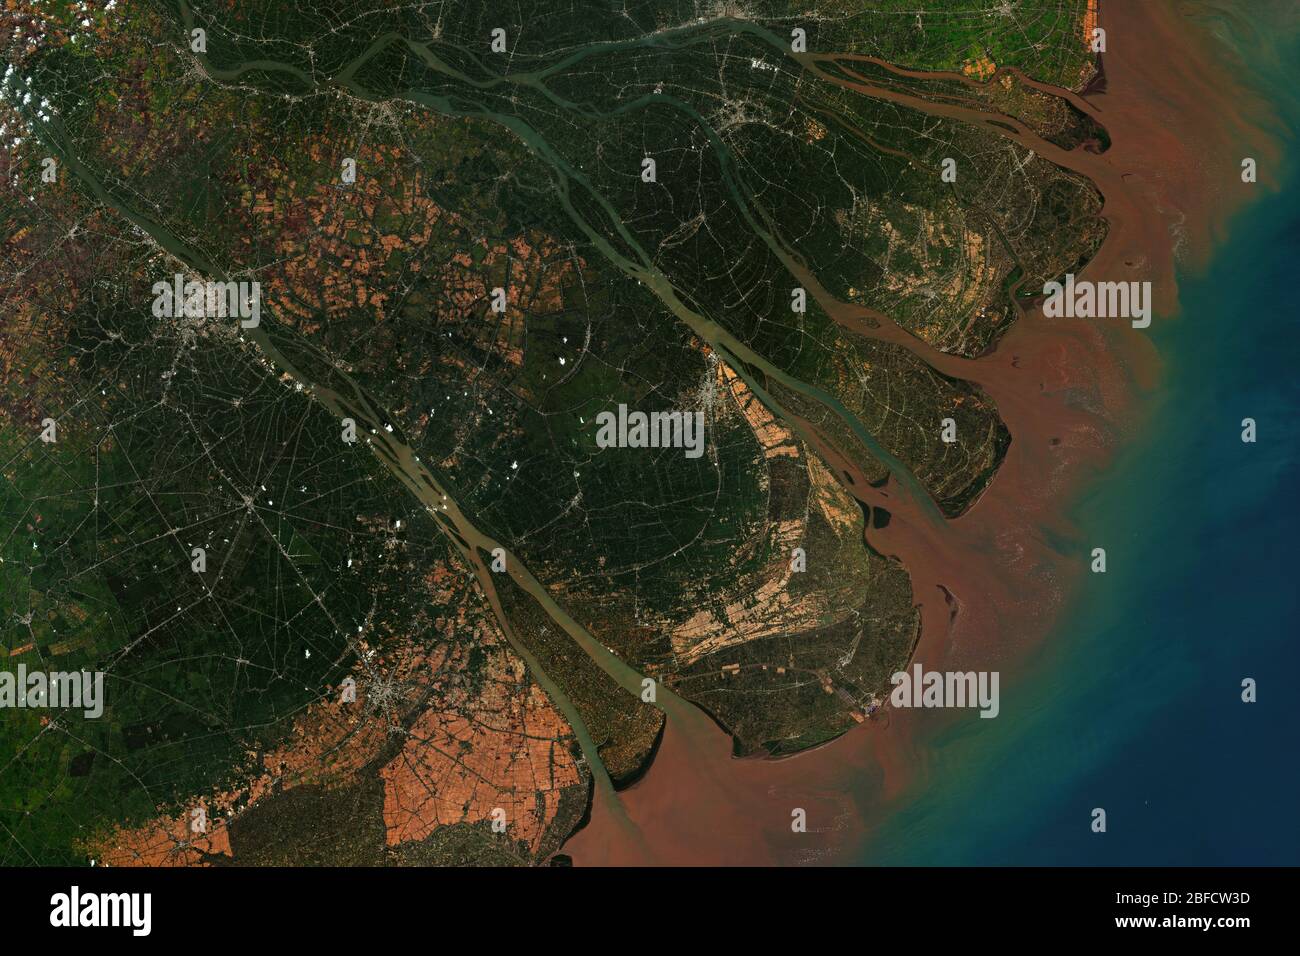 El delta del río Mekong en Vietnam, donde el río Mekong se acerca y desemboca en el Mar de China Meridional, visto desde el espacio, contiene Copernicus modificado Foto de stock